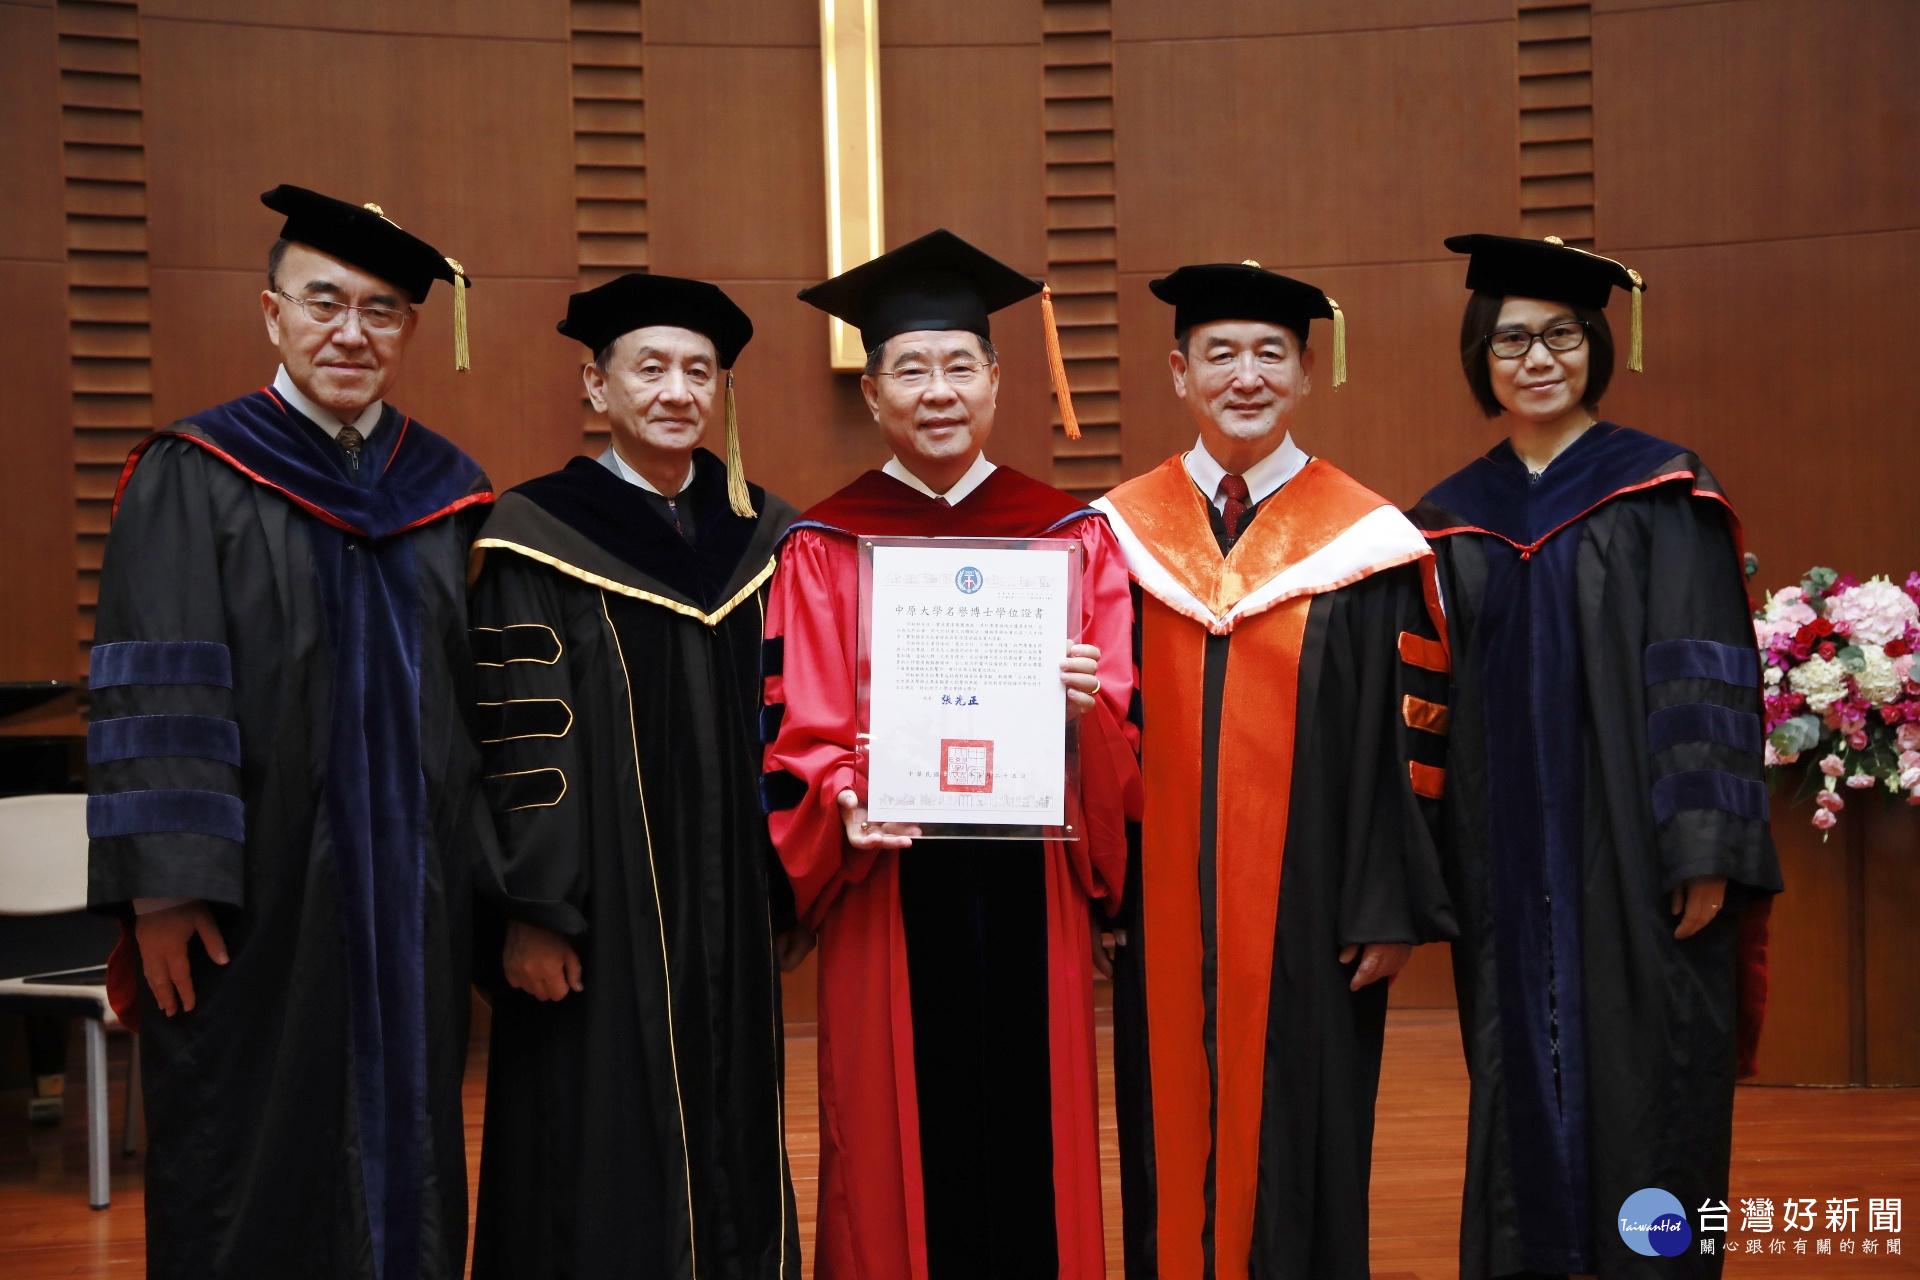 中原化工系校友邱秋林獲頒名譽博士學位。